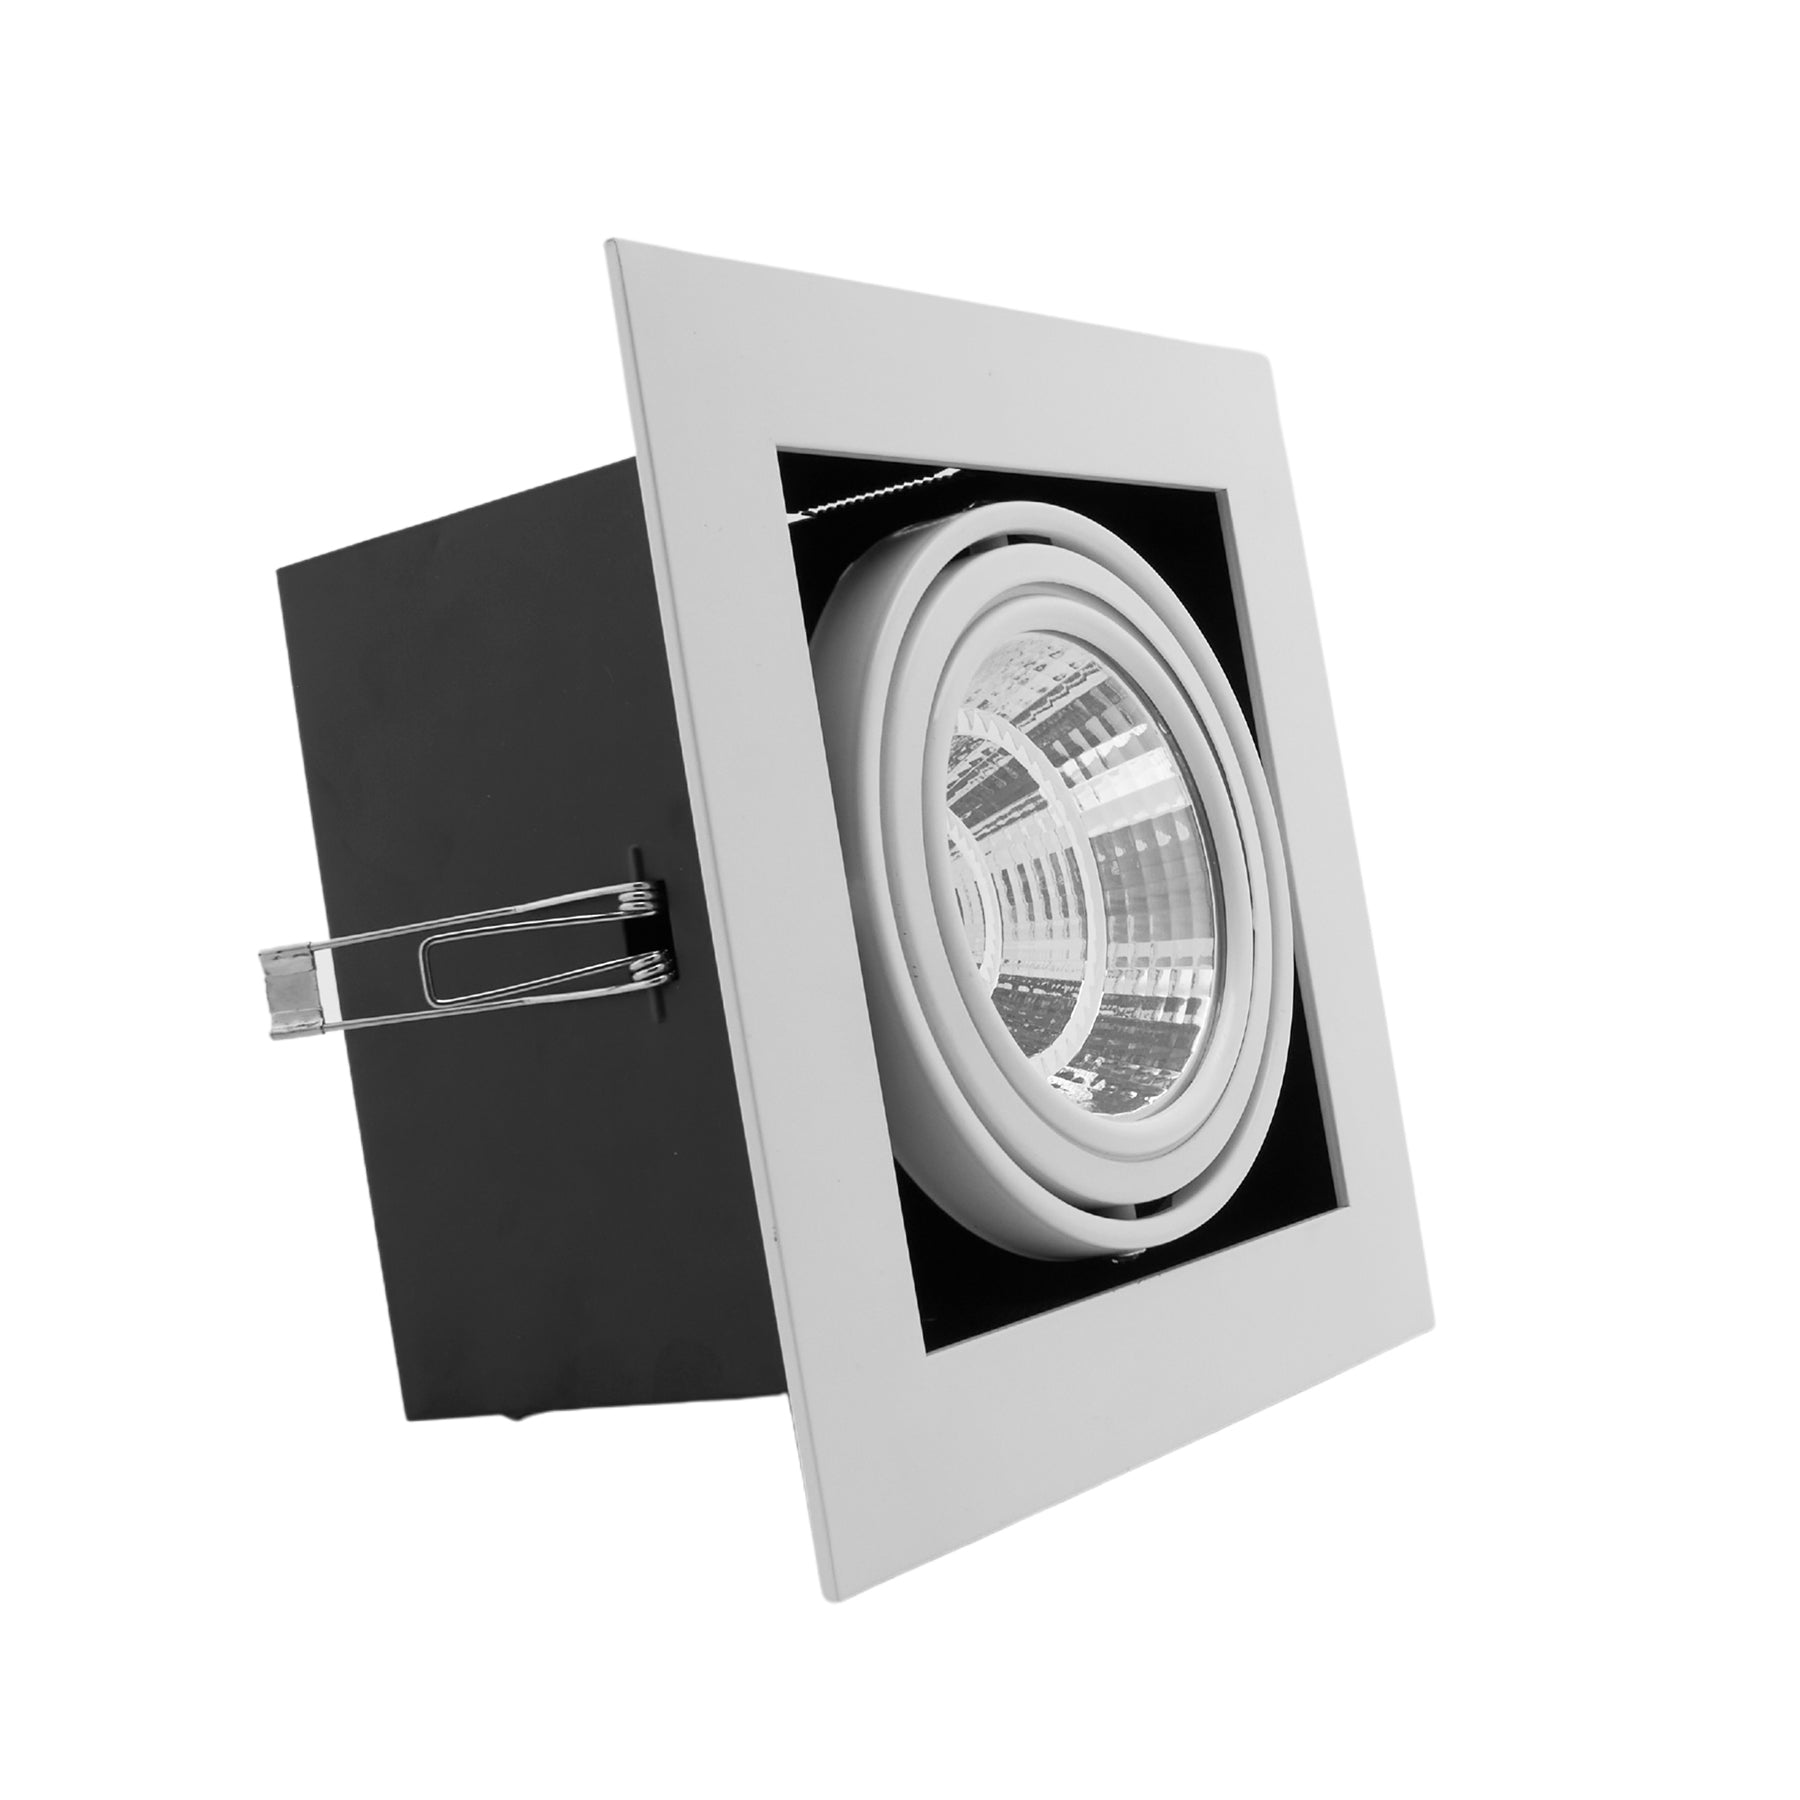 Downlight/Foco Cardan LED 20W 4100K Cuadrado empotrable corte 180mm Marco Blanco